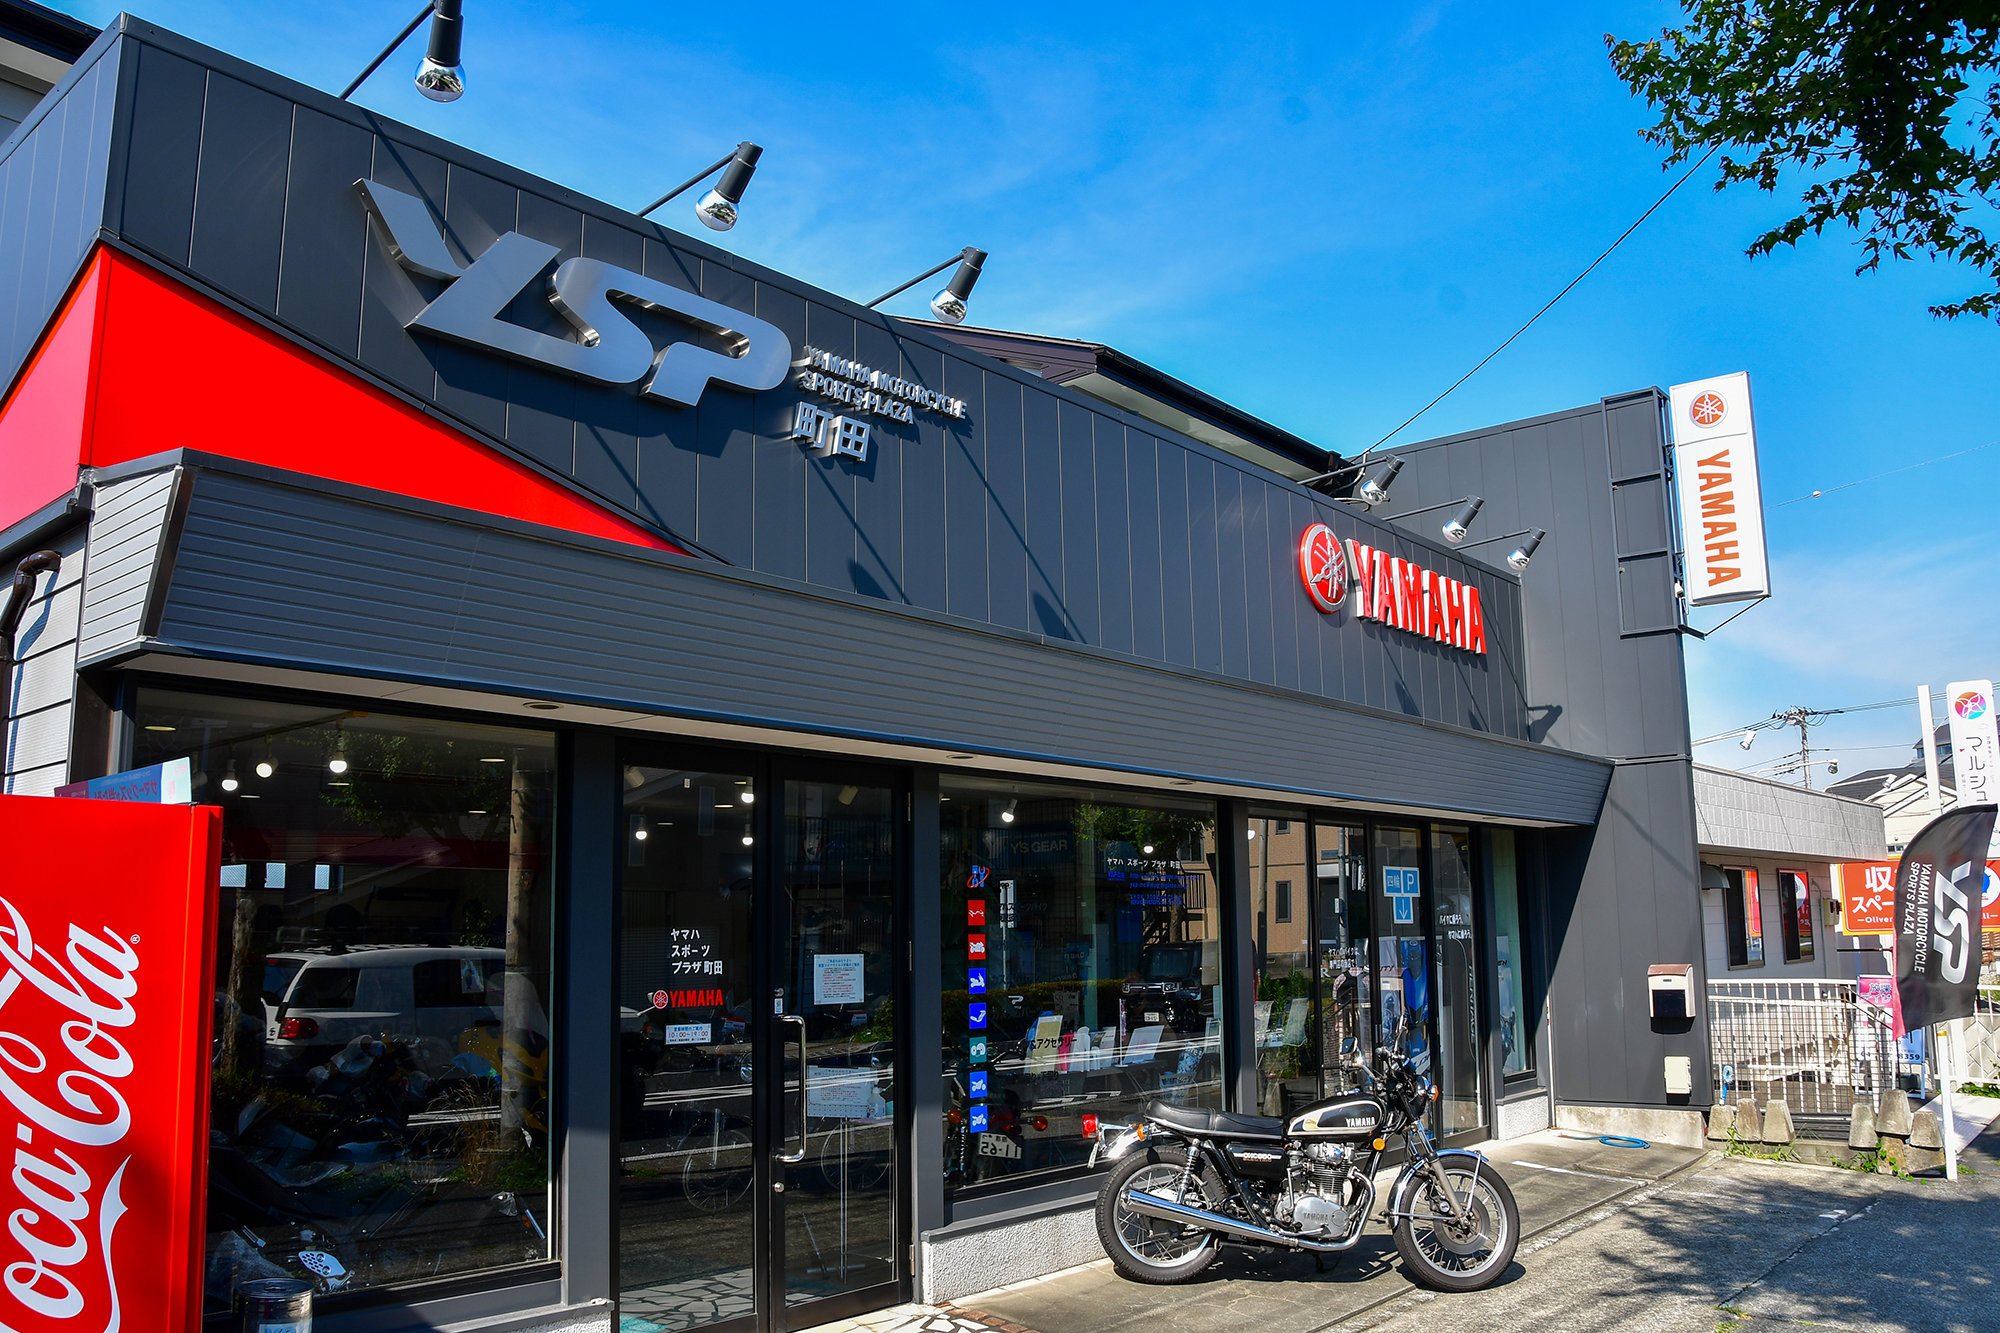 ヤマハスポーツバイク専門店としてお客さまお一人おひとりに合わせた細やかな提案やアットホームな対応でバイクライフをサポートするYSP町田